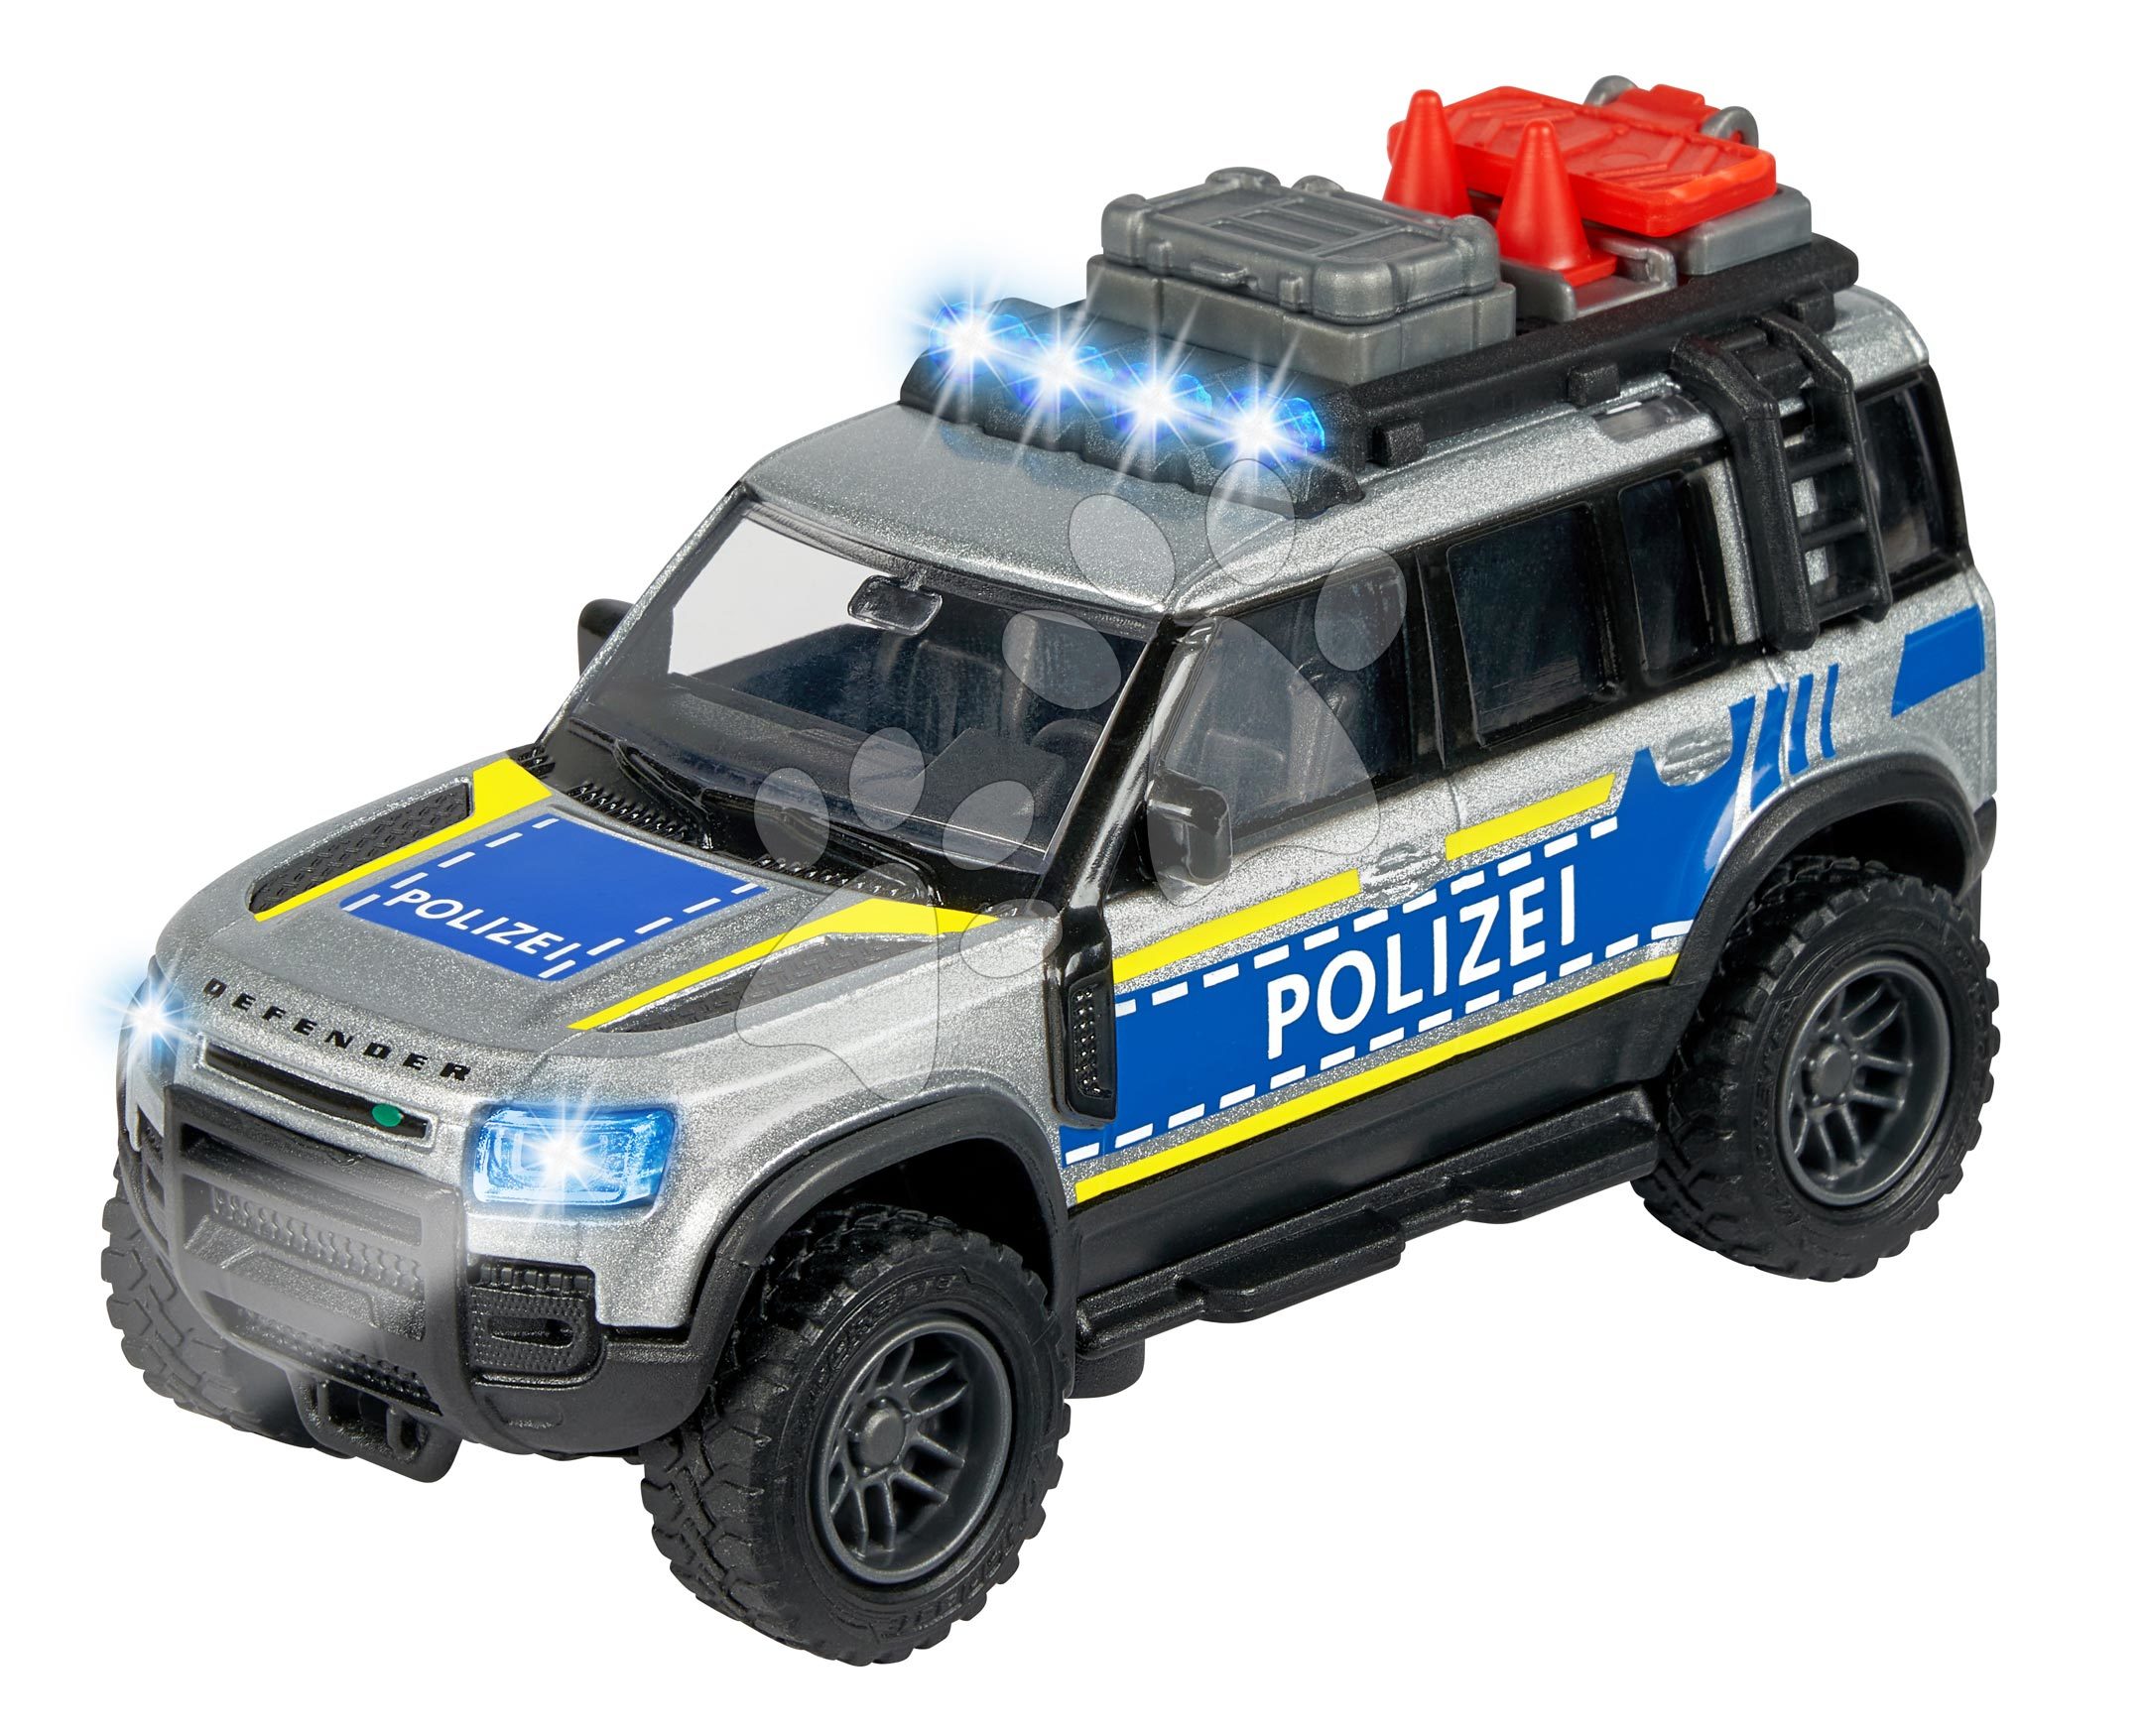 Rendőrautó Land Rover Police Majorette hanggal és fénnyel hossza 12,5 cm